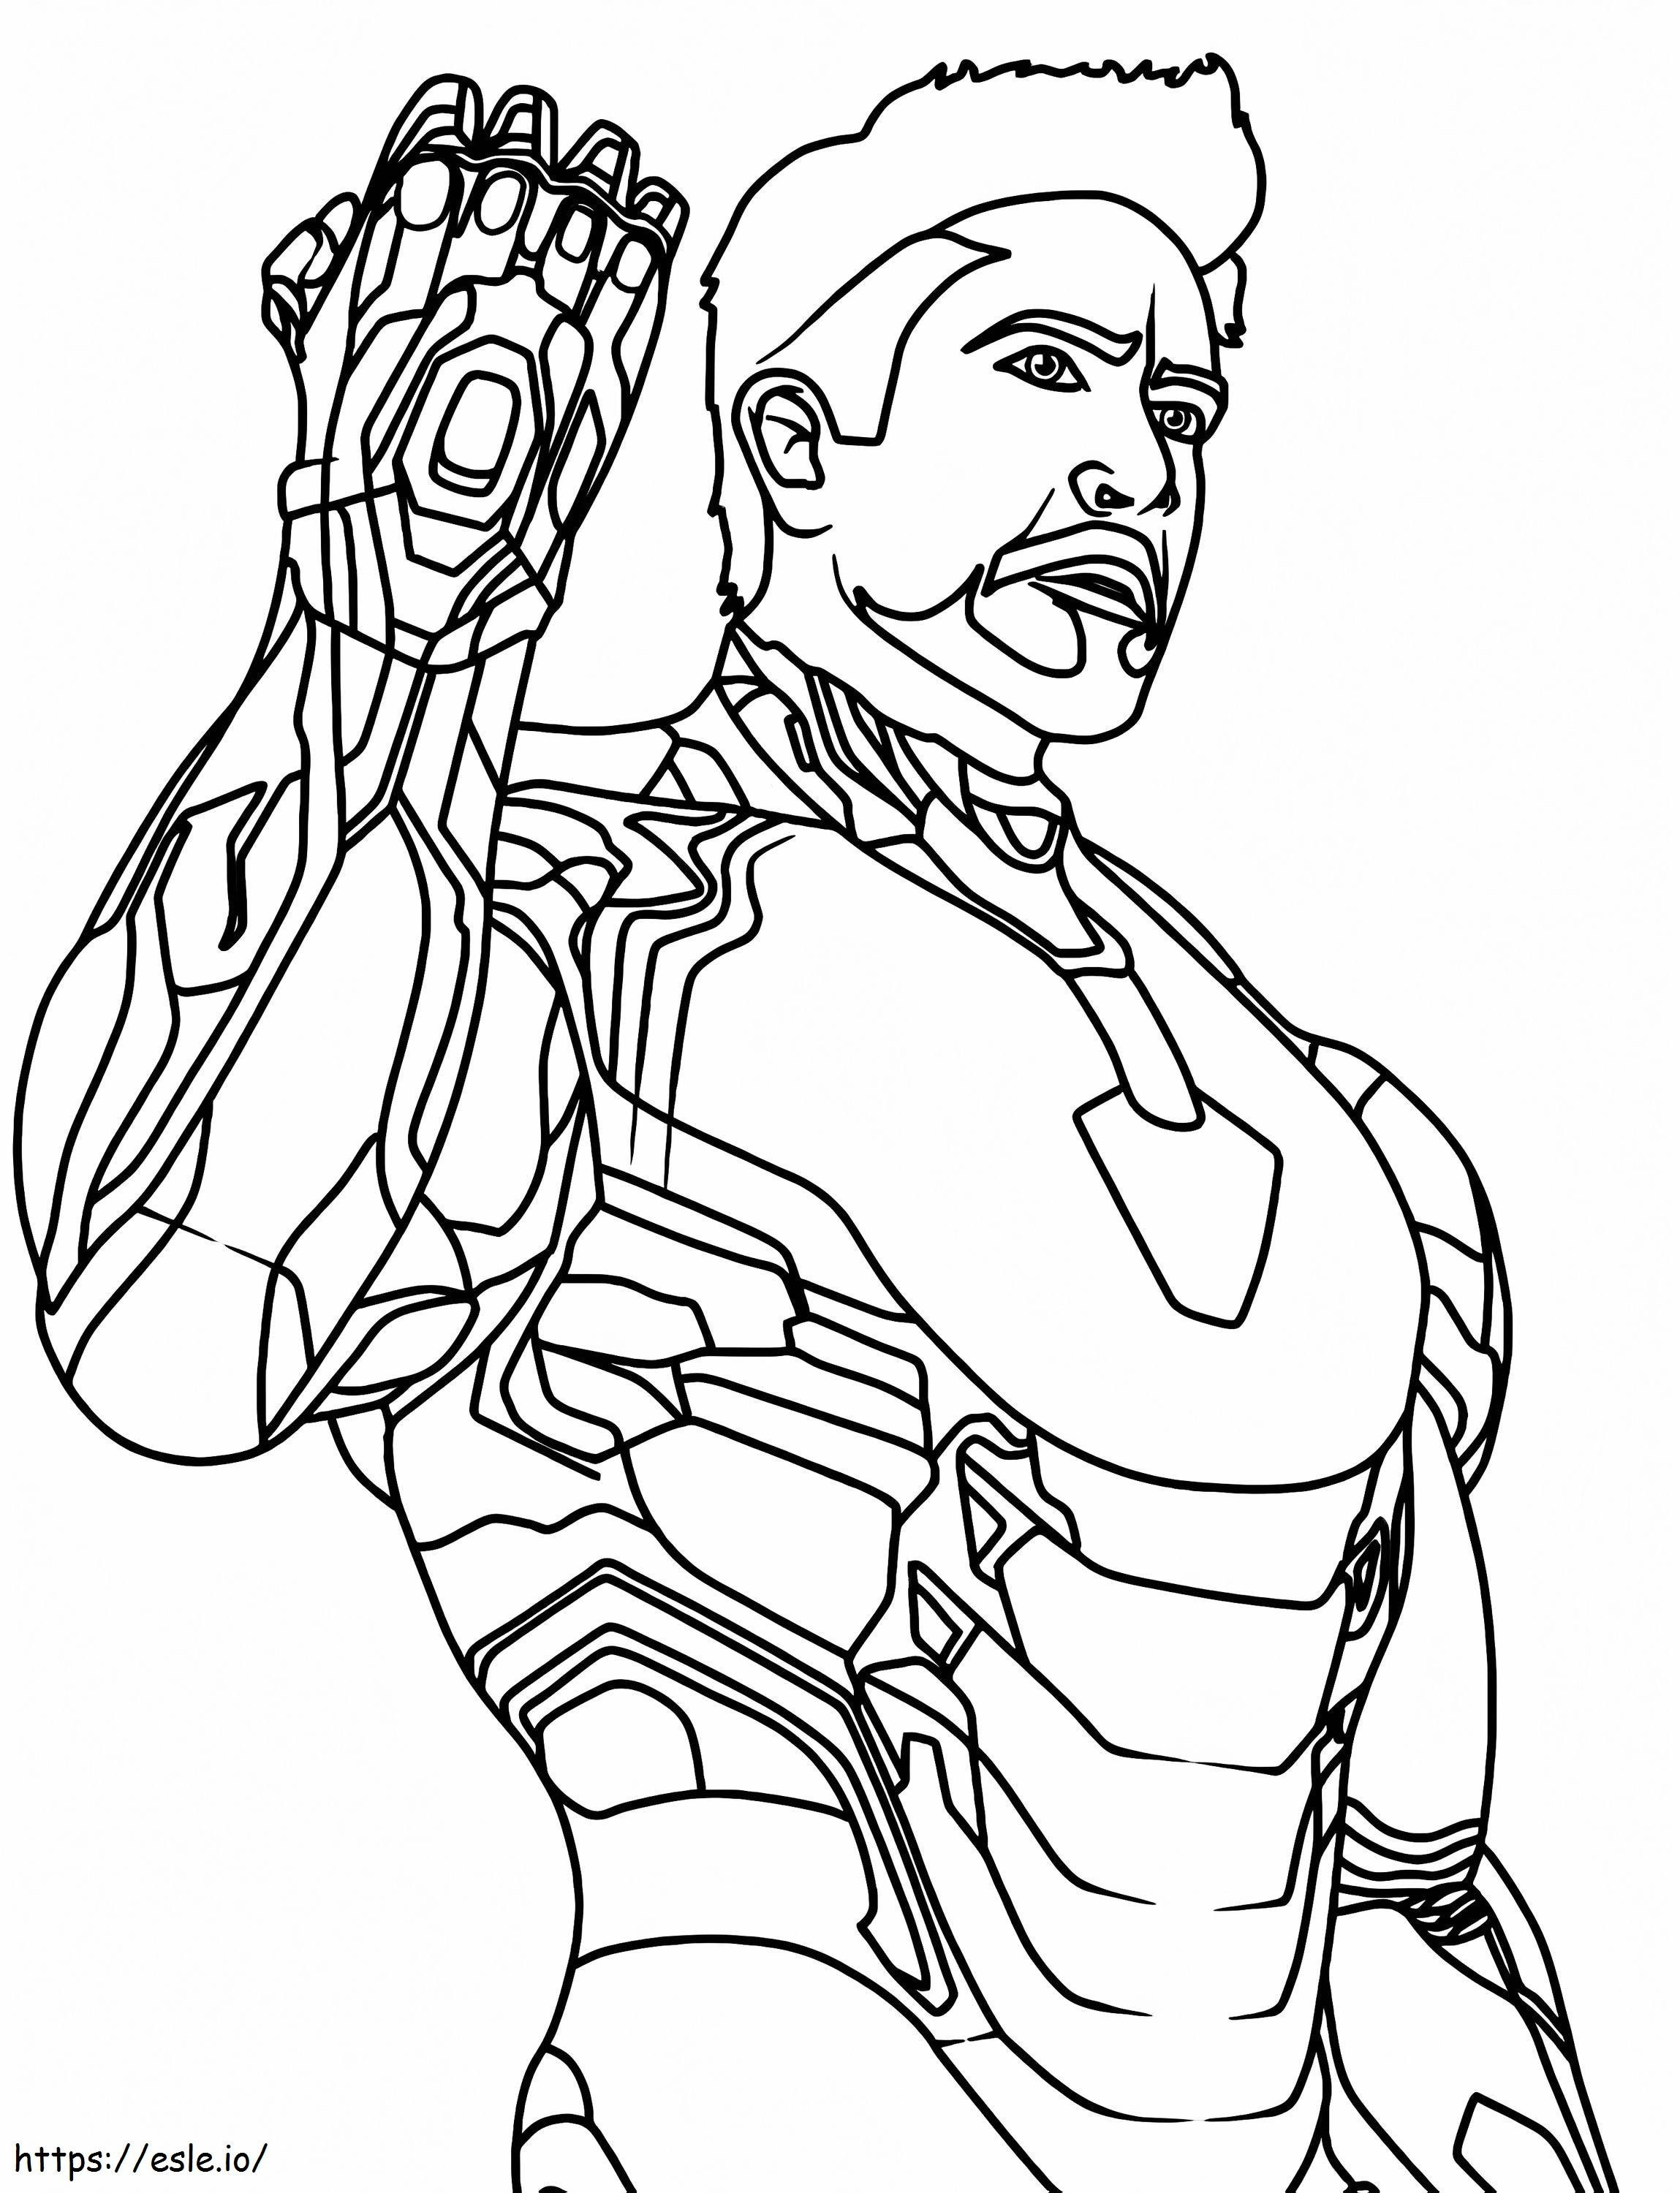 Iron Man en oneindigheidsstenen kleurplaat kleurplaat